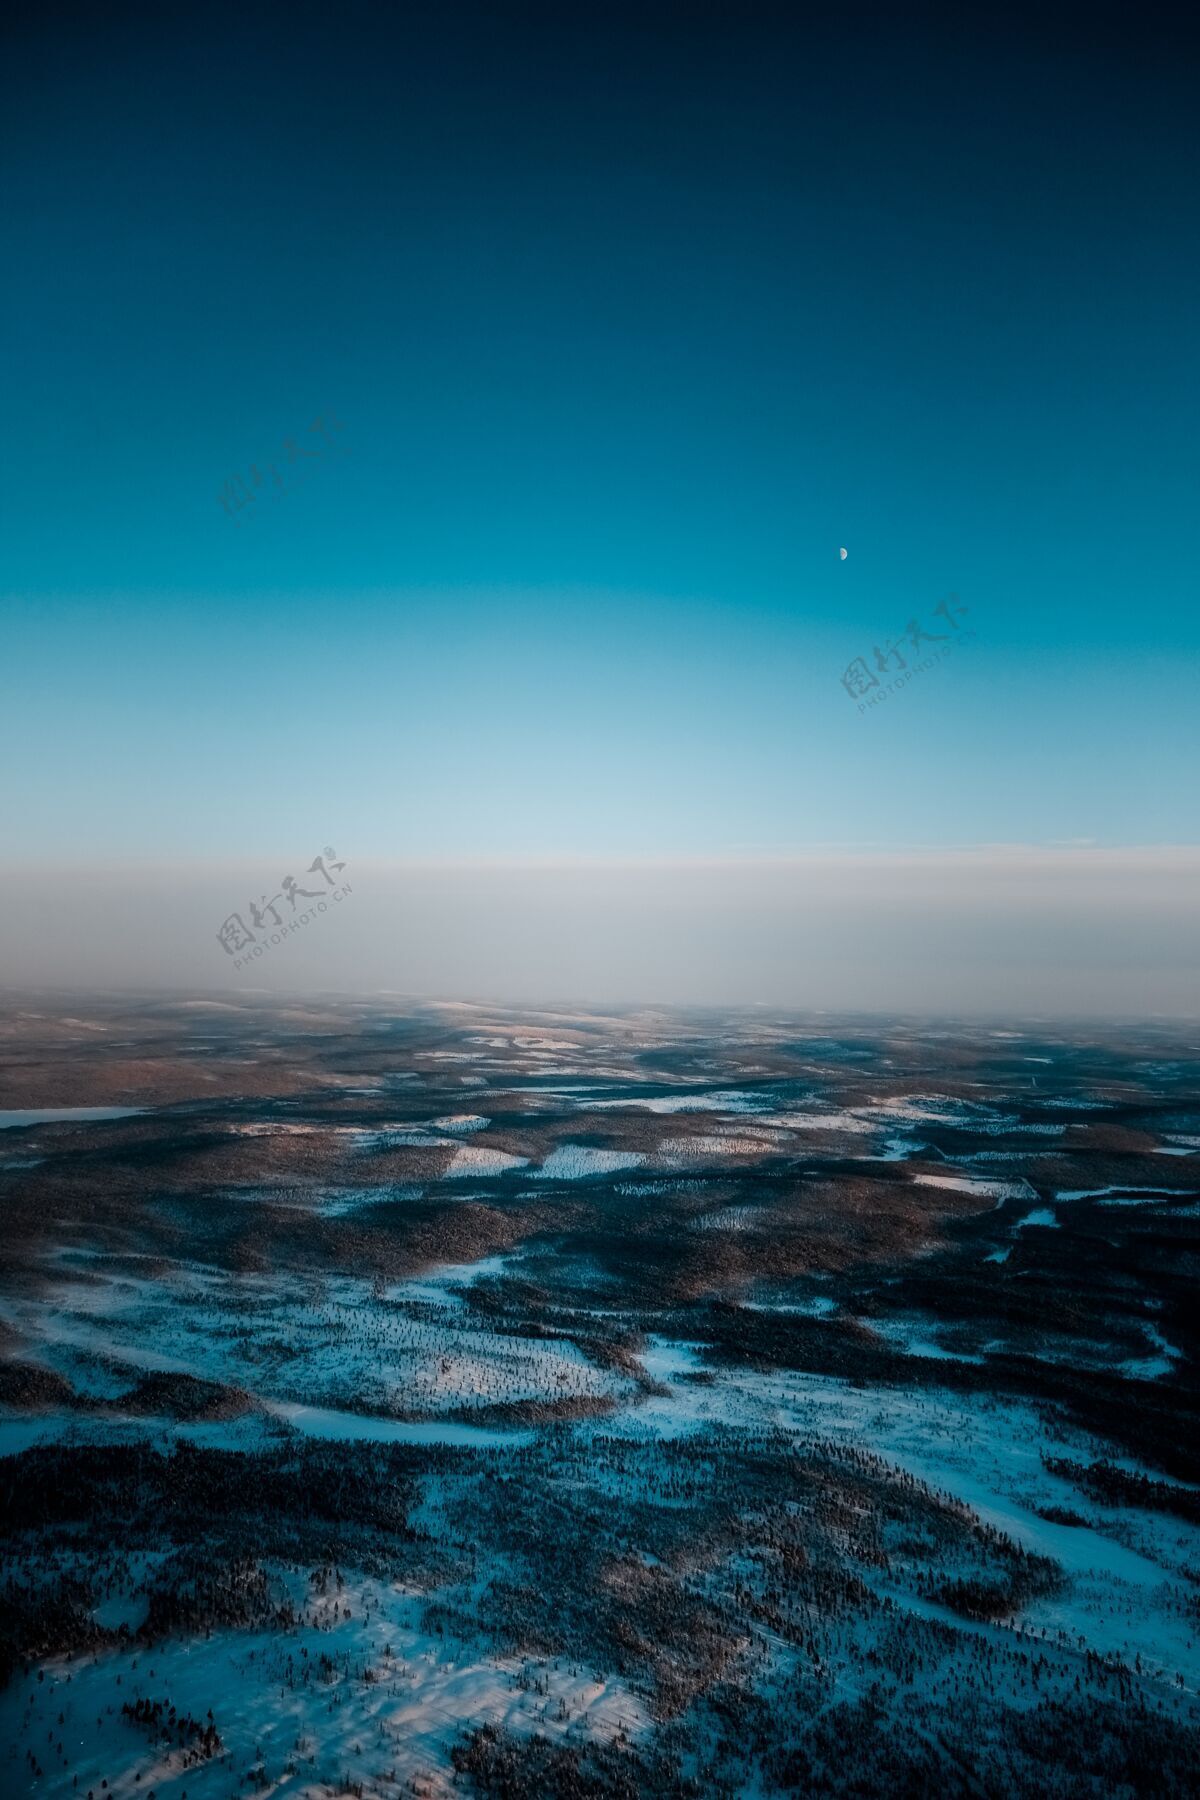 空中空中拍摄了一幅清晨白雪覆盖的美丽景色高风景自然